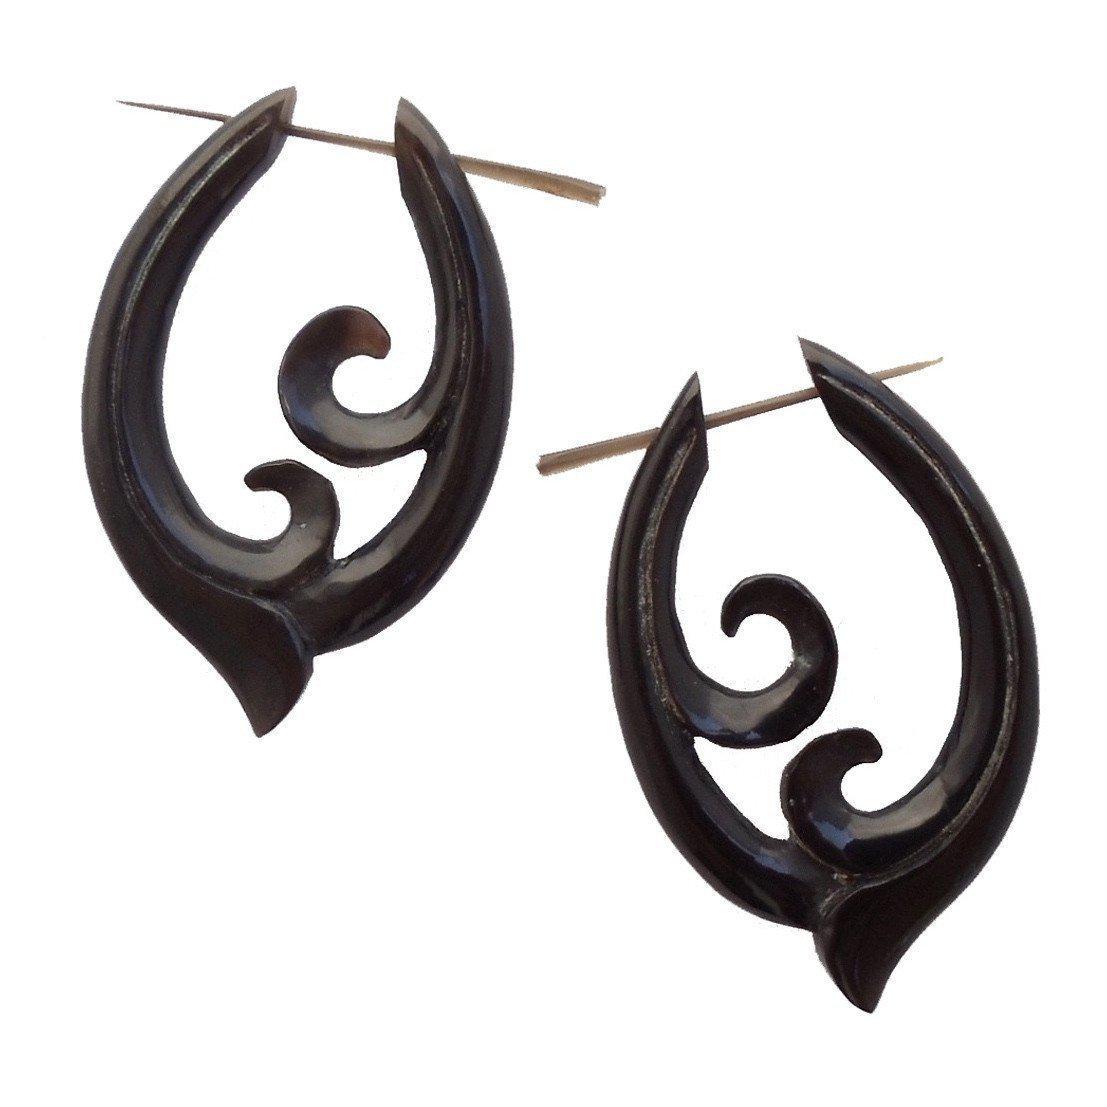 Horn Jewelry :|: Pura Vida. Horn Earrings, 1 inch W x 1 3/4 inch L. | Tribal Earrings